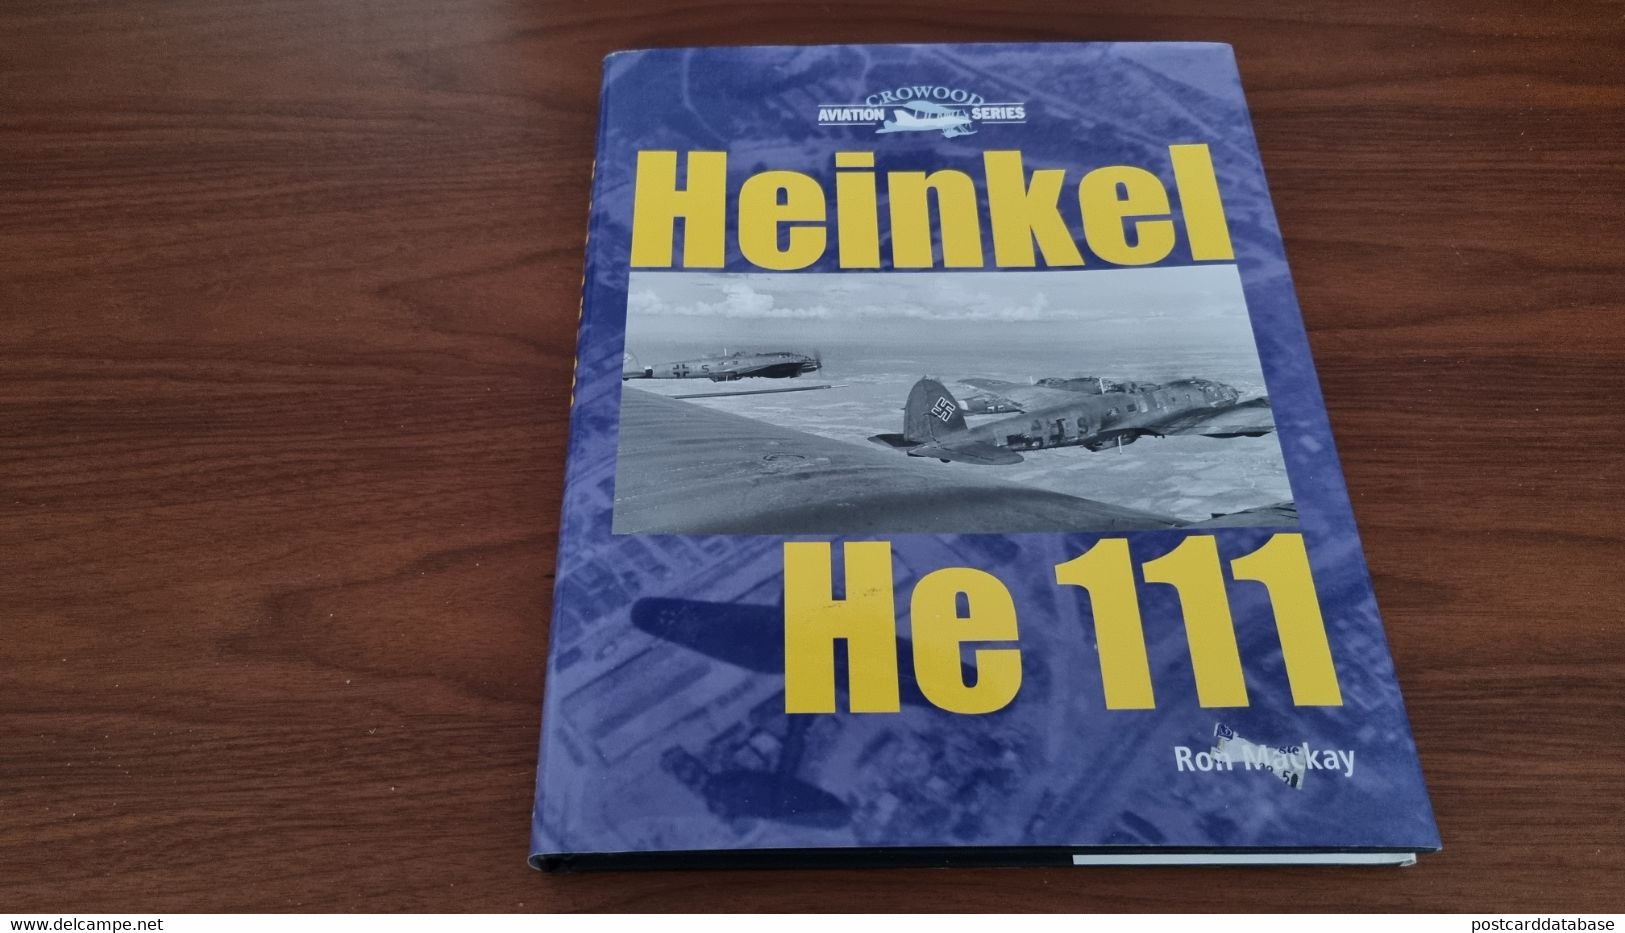 Heinkel He 111 - Aviation Series - Ron Mackay - War 1939-45